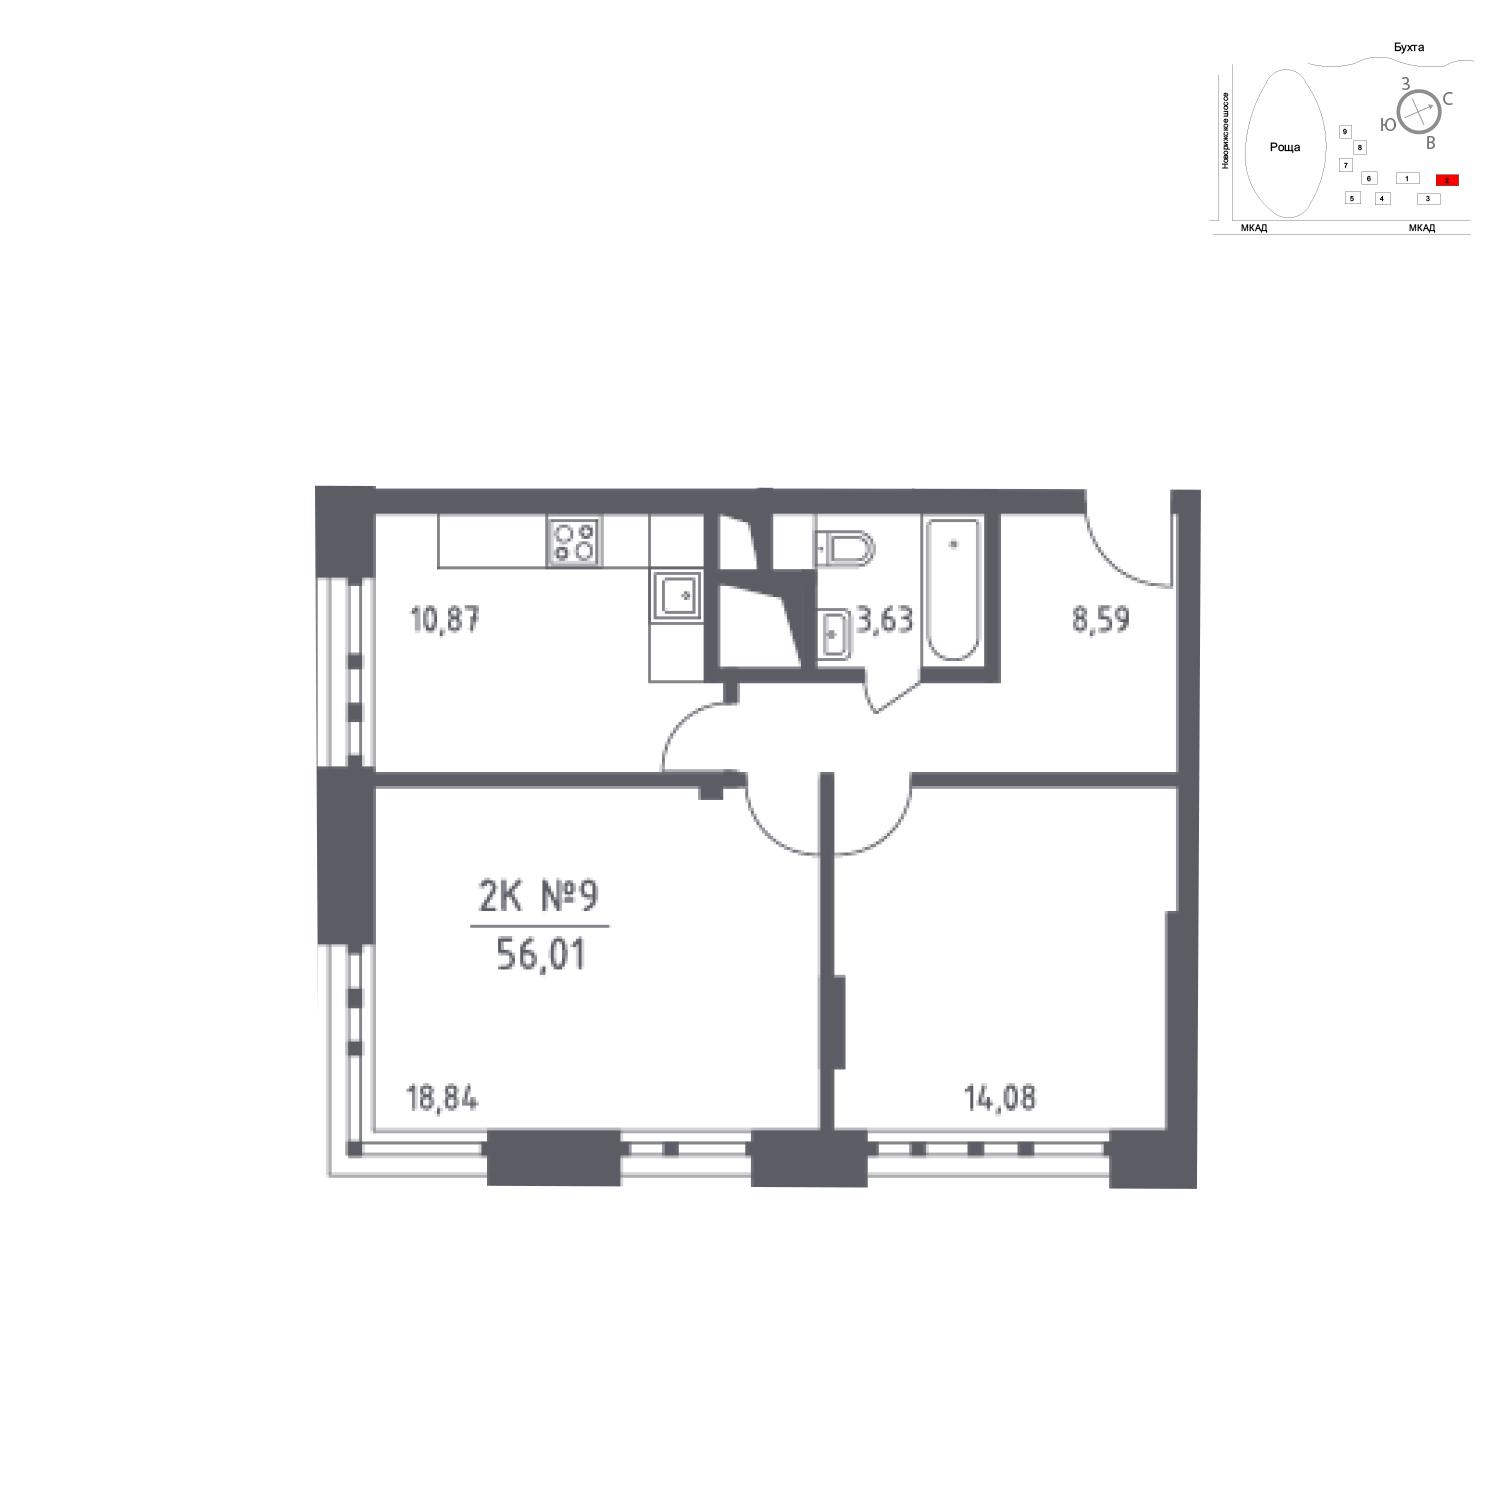 Продаётся 2-комнатная квартира в новостройке 62.7 кв.м. этаж 33/33 за 9 660 126 руб 